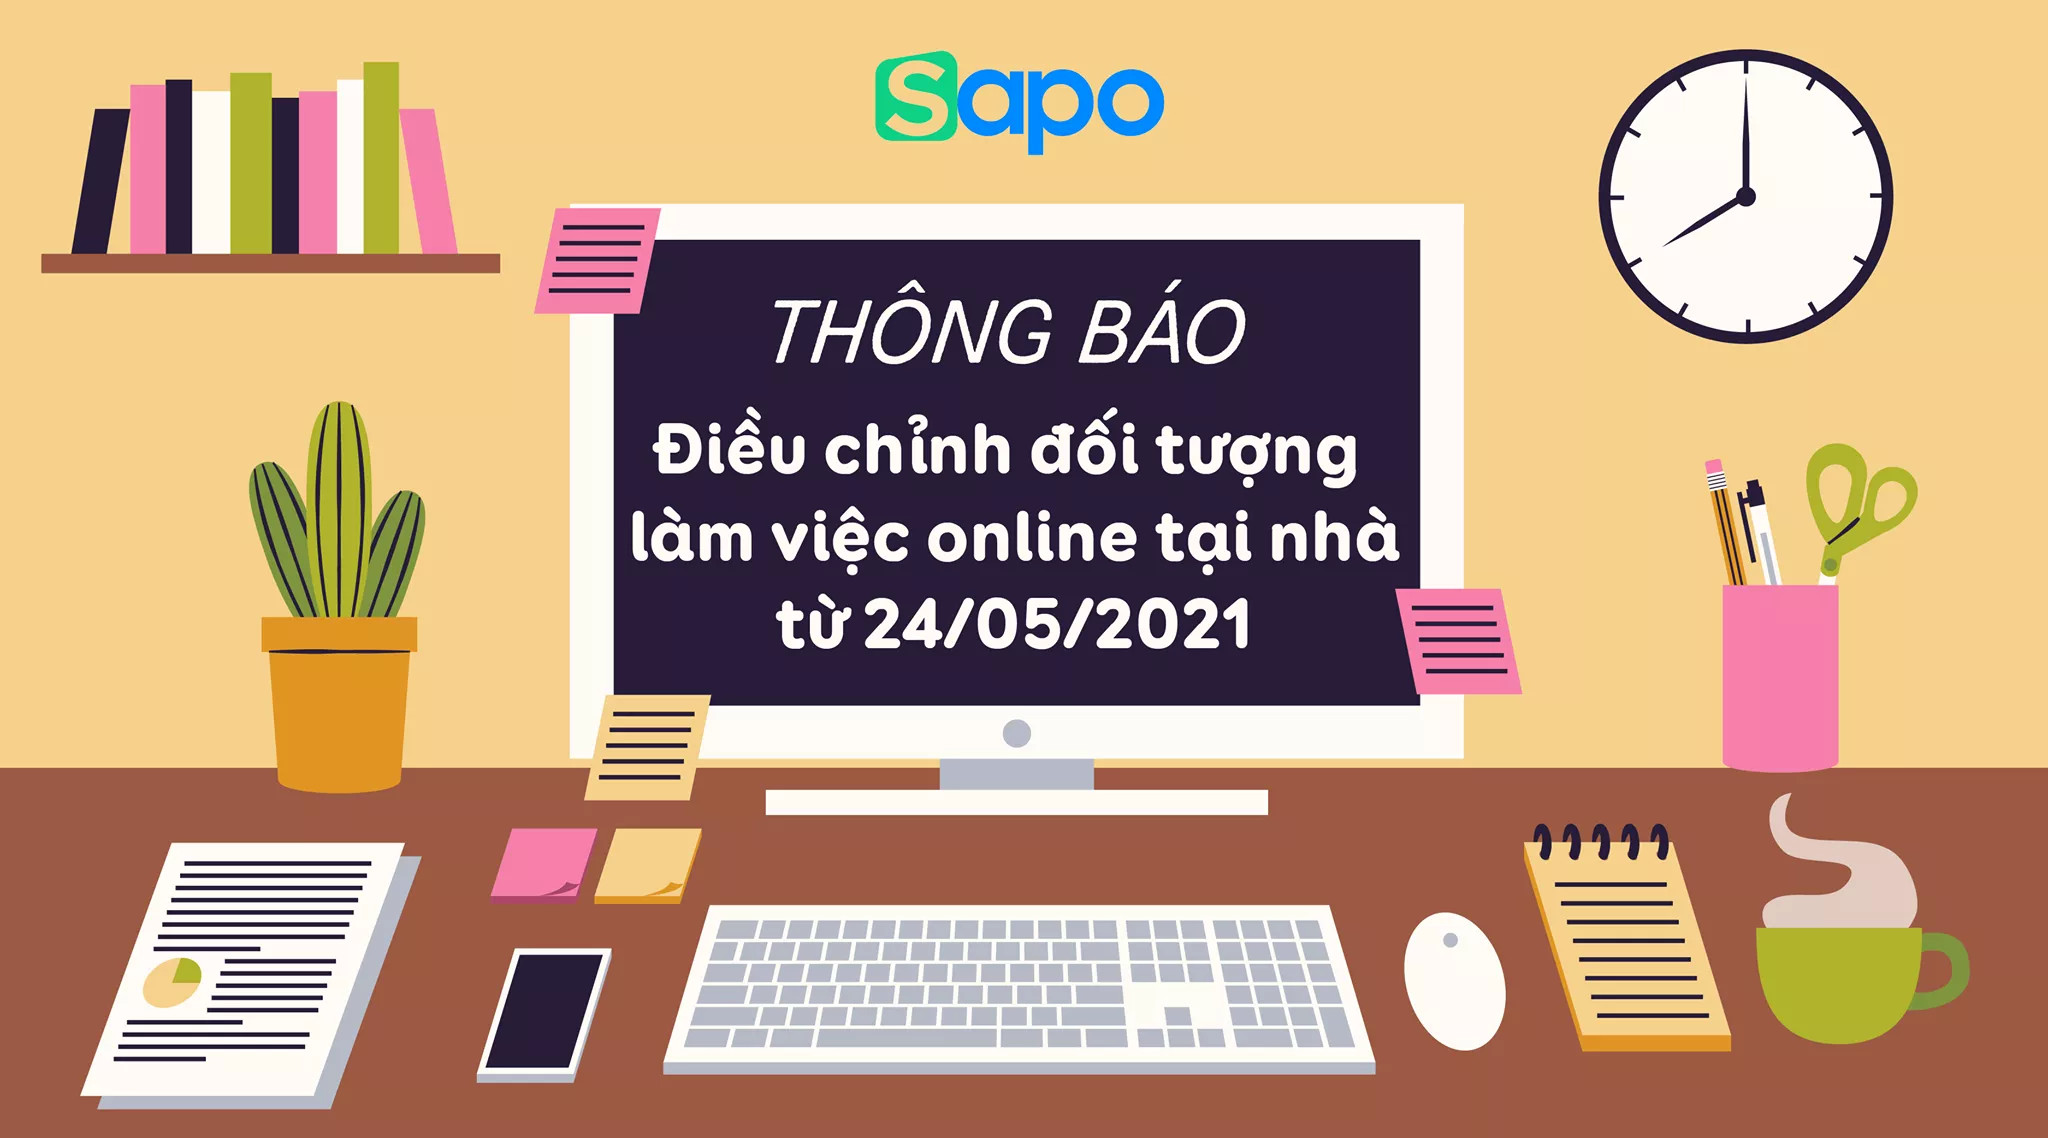 Điều chỉnh đối tượng áp dụng làm việc online tại nhà đối với Sapo Hà Nội bắt đầu từ thứ 2 ngày 24/05/2021